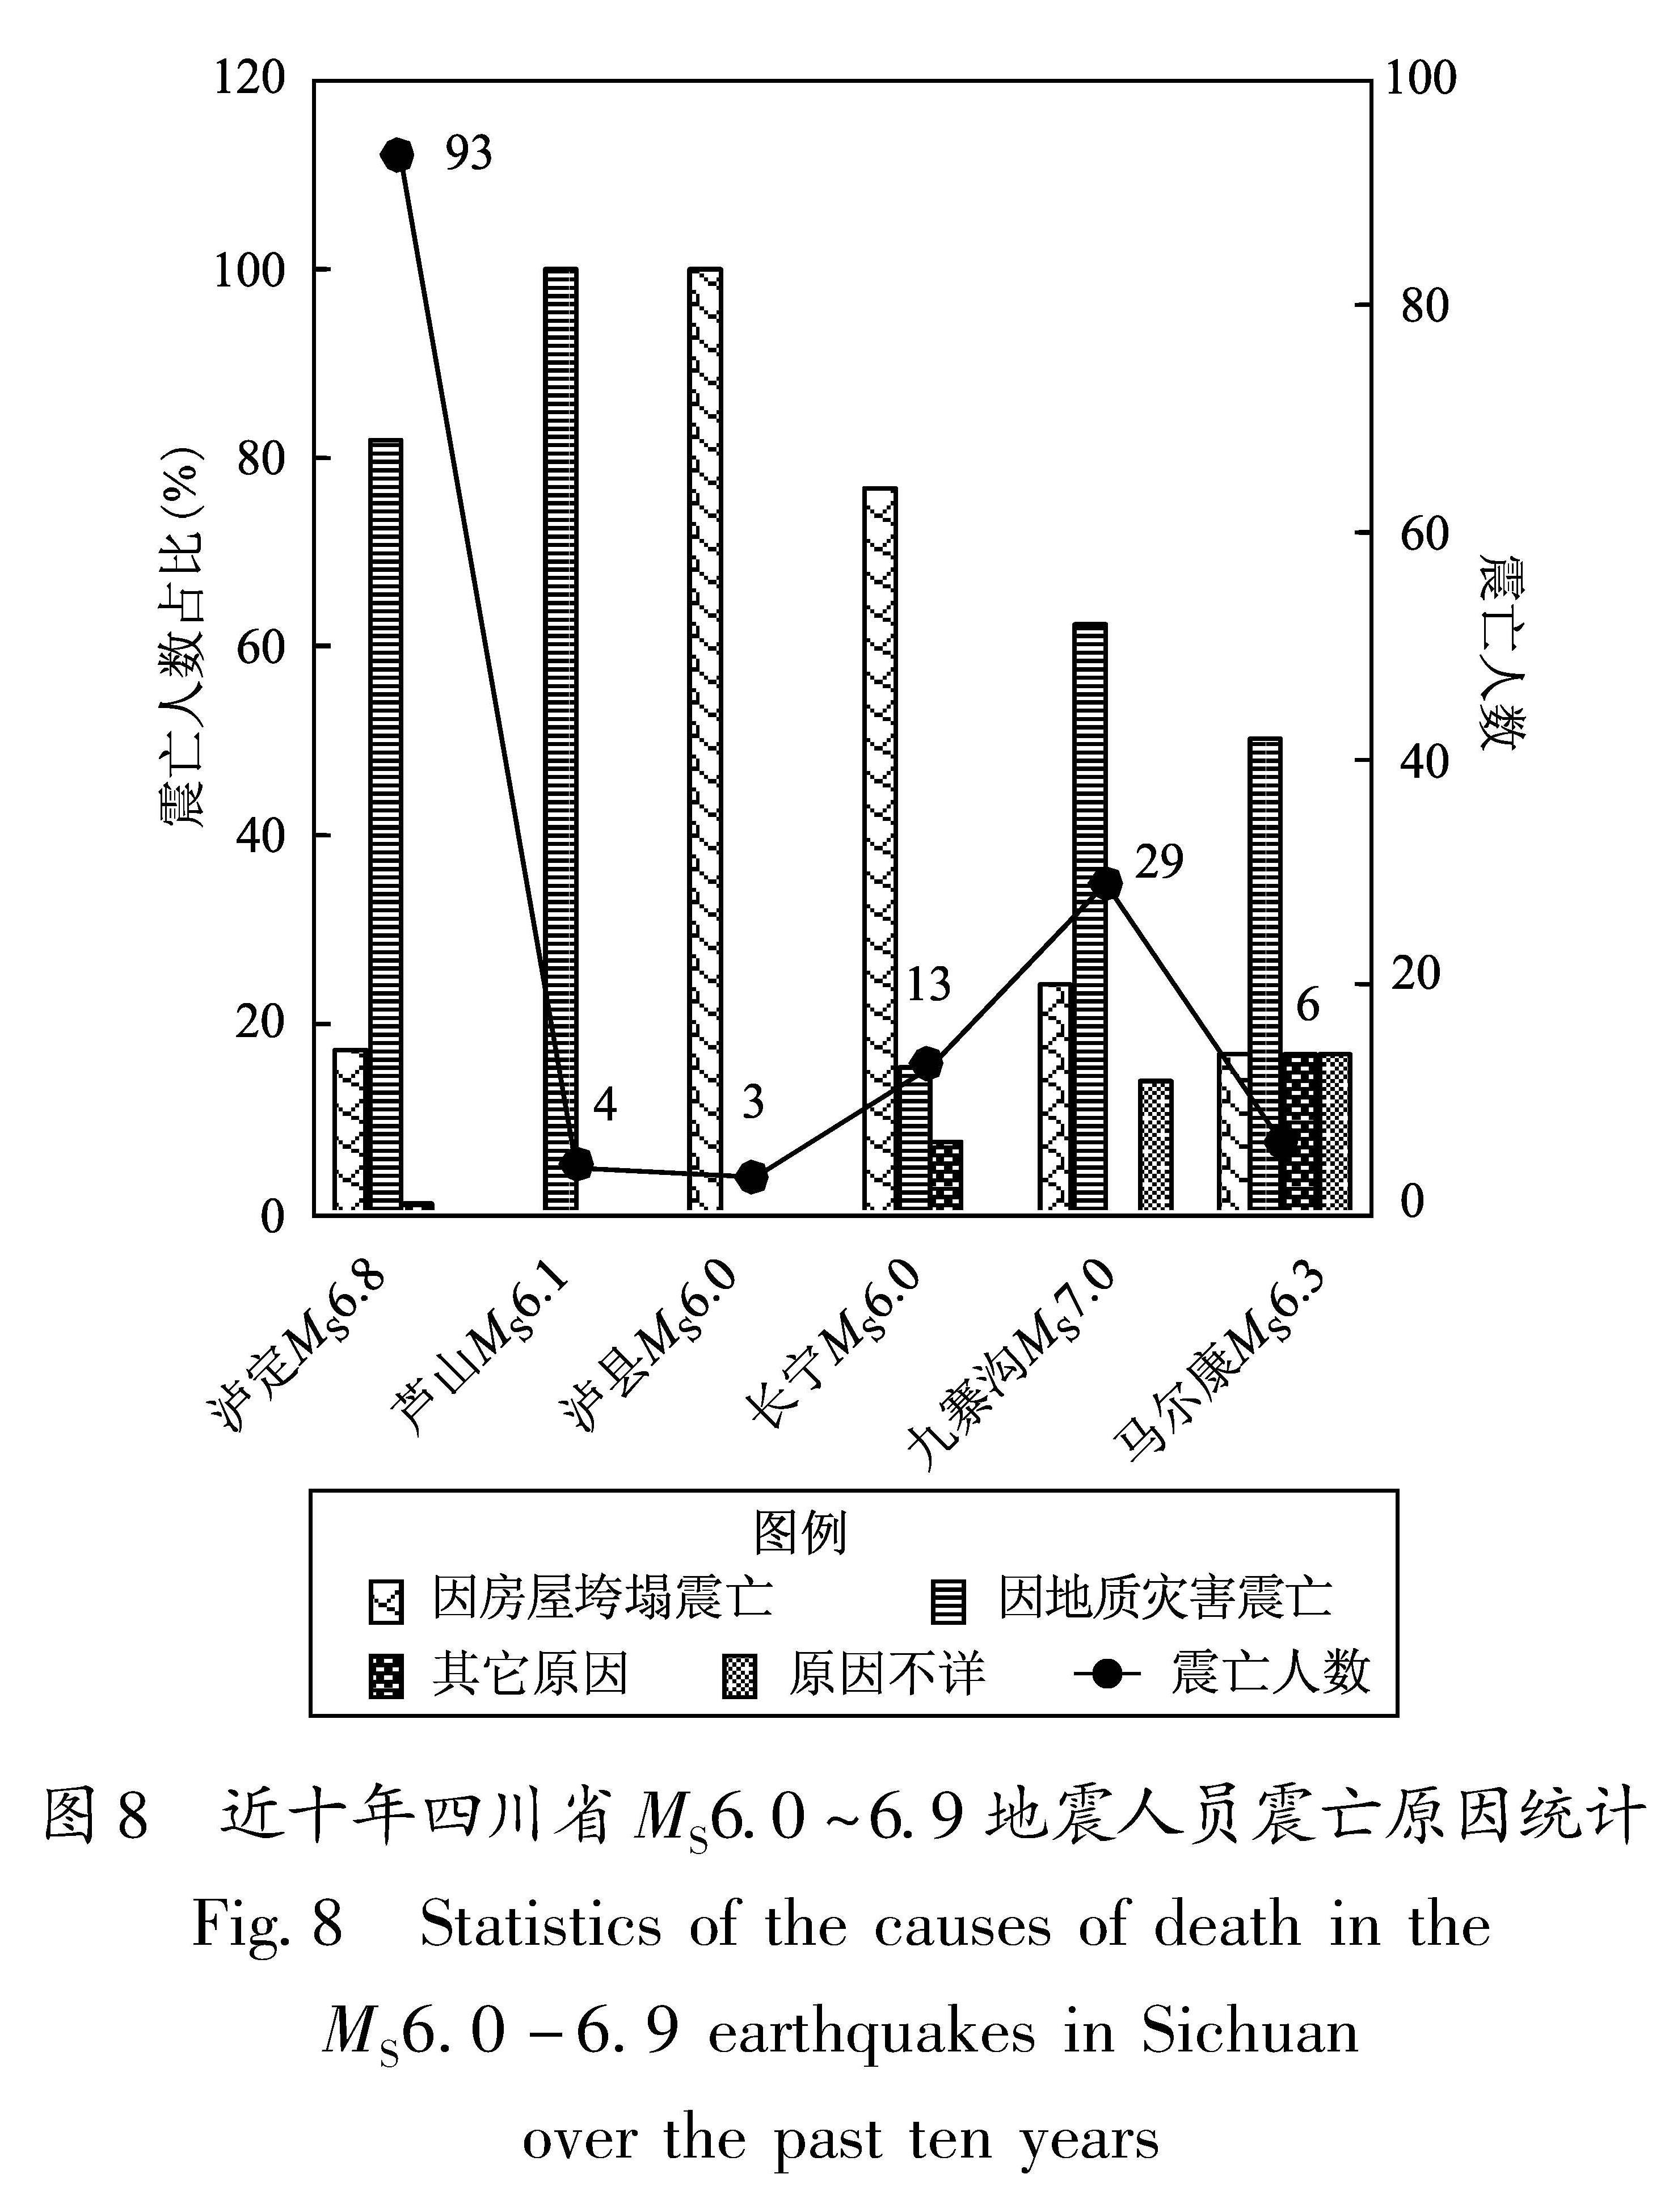 图8 近十年四川省MS6.0～6.9地震人员震亡原因统计<br/>Fig.8 Statistics of the causes of death in the MS6.0-6.9 earthquakes in Sichuan over the past ten years